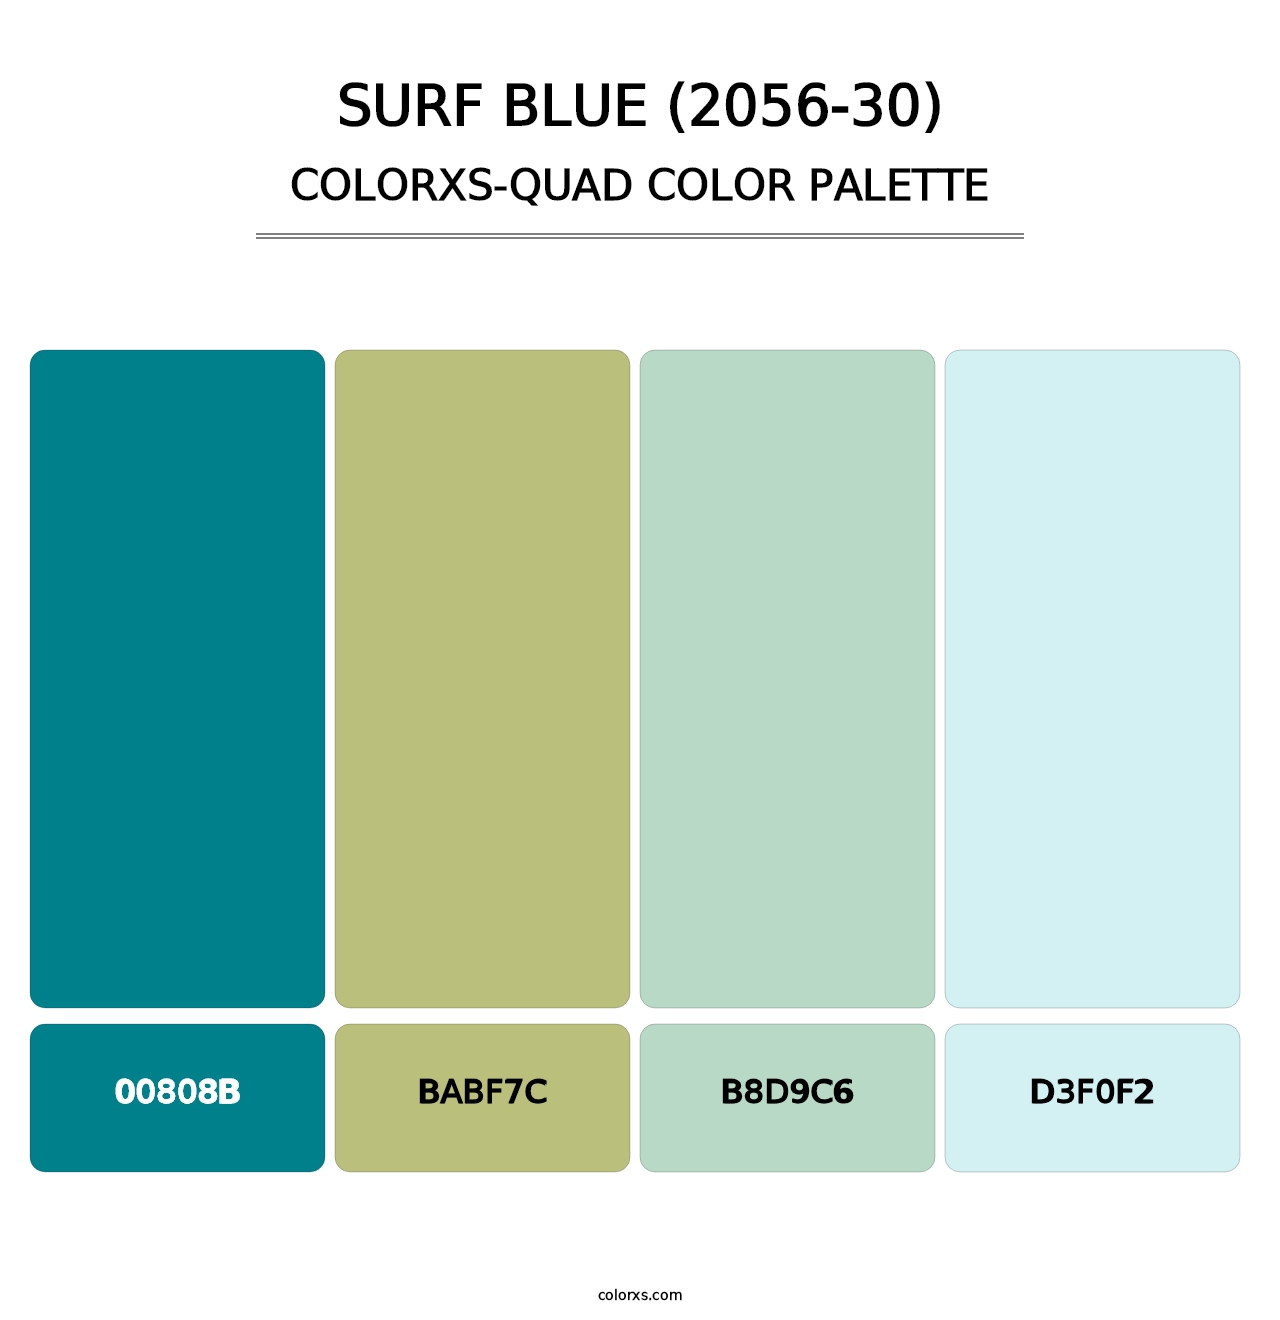 Surf Blue (2056-30) - Colorxs Quad Palette